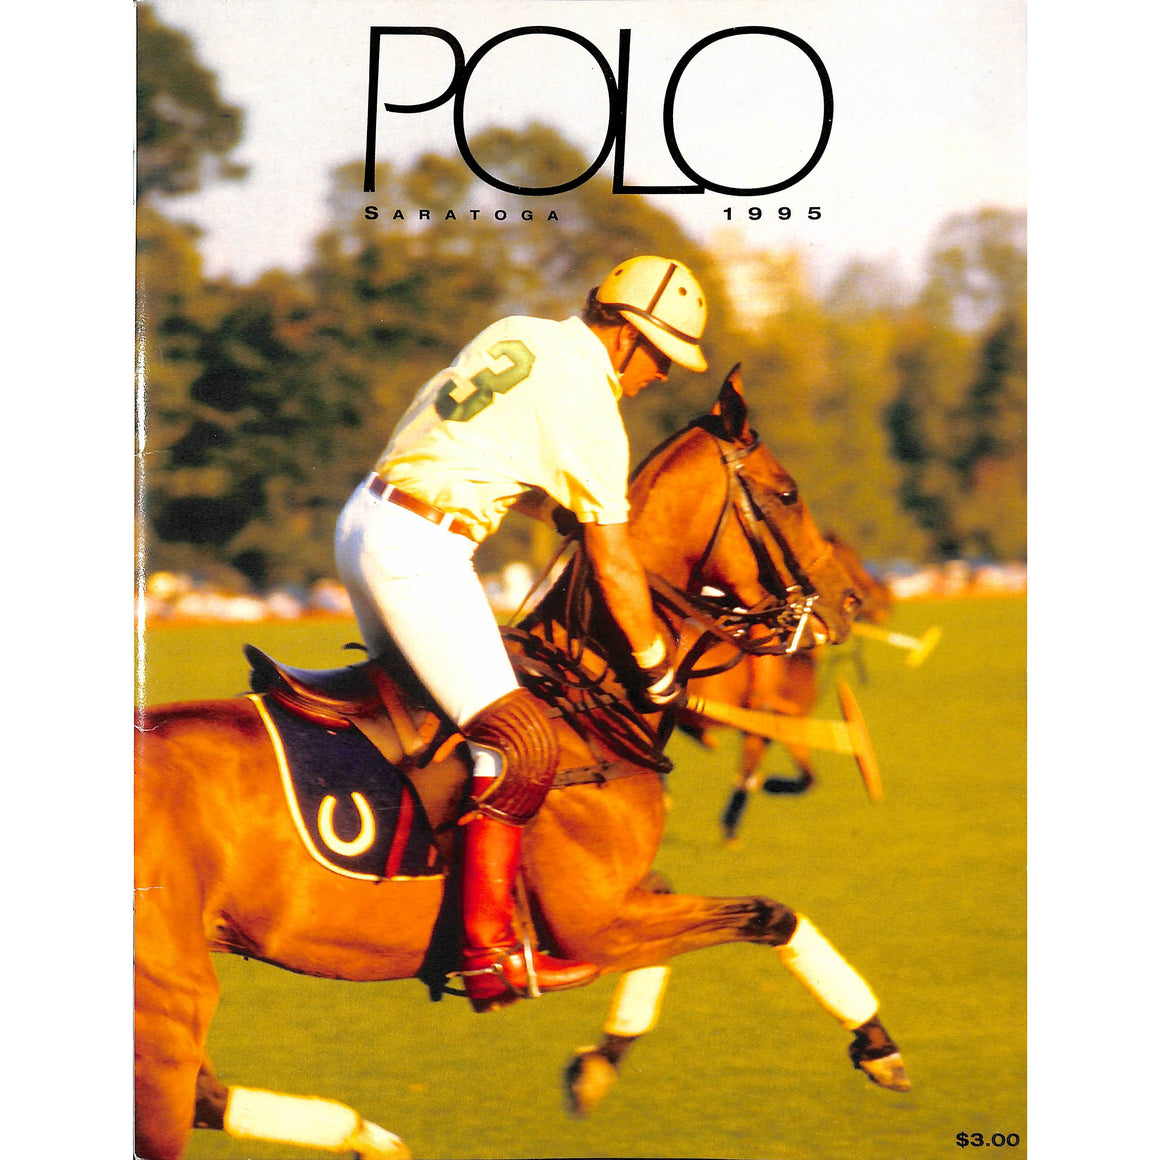 "Polo Magazine Greenwich/ Saratoga 1995" (SOLD)